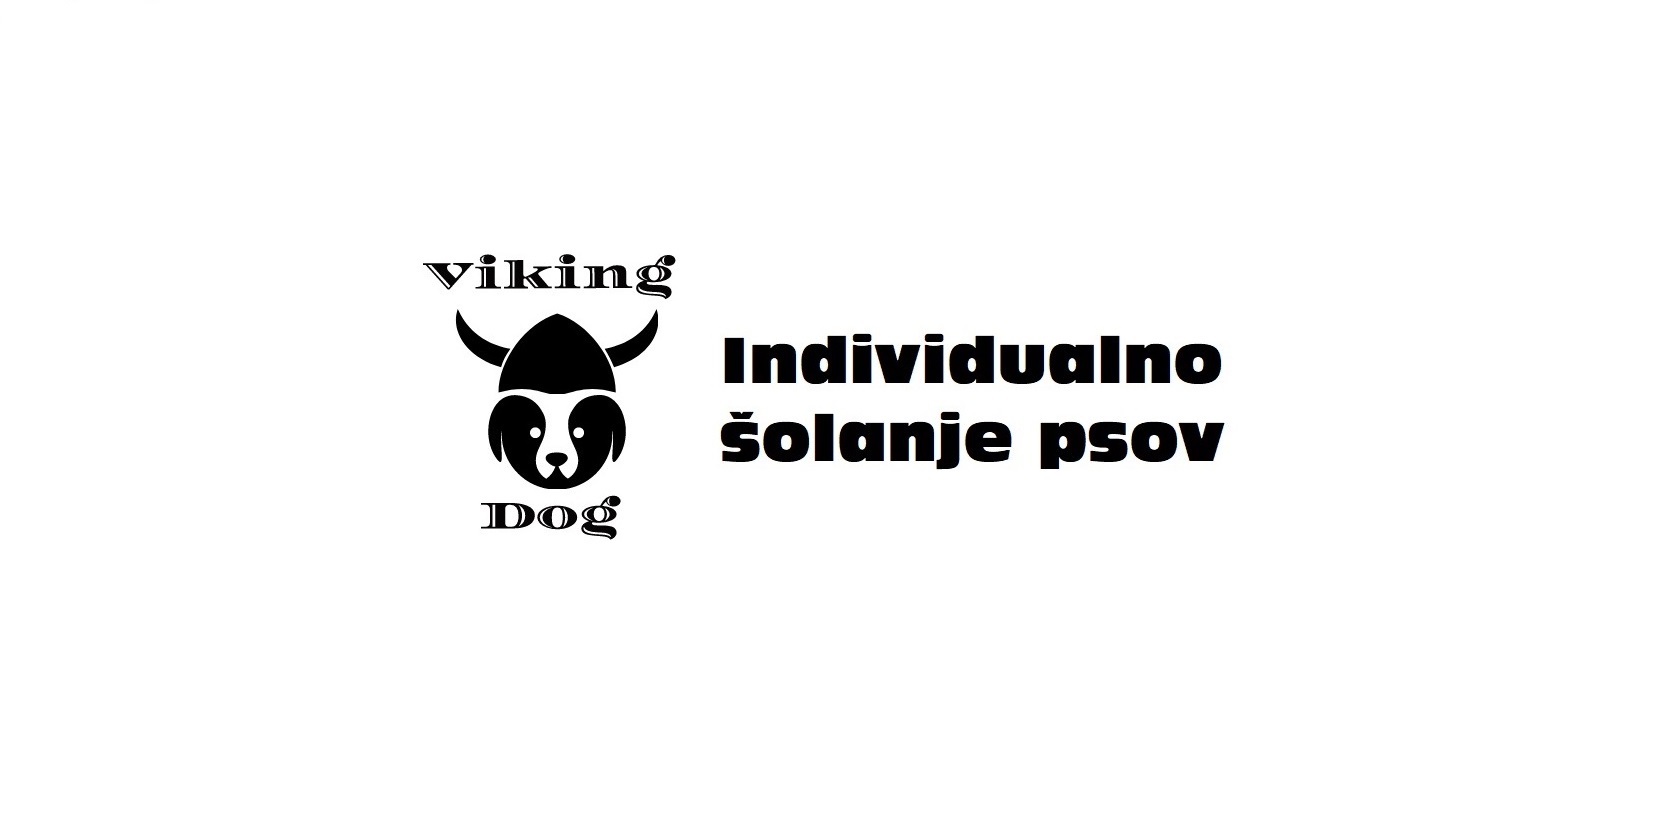 Viking-dog-sola-individualno-solanje-psov-logotip-galerija